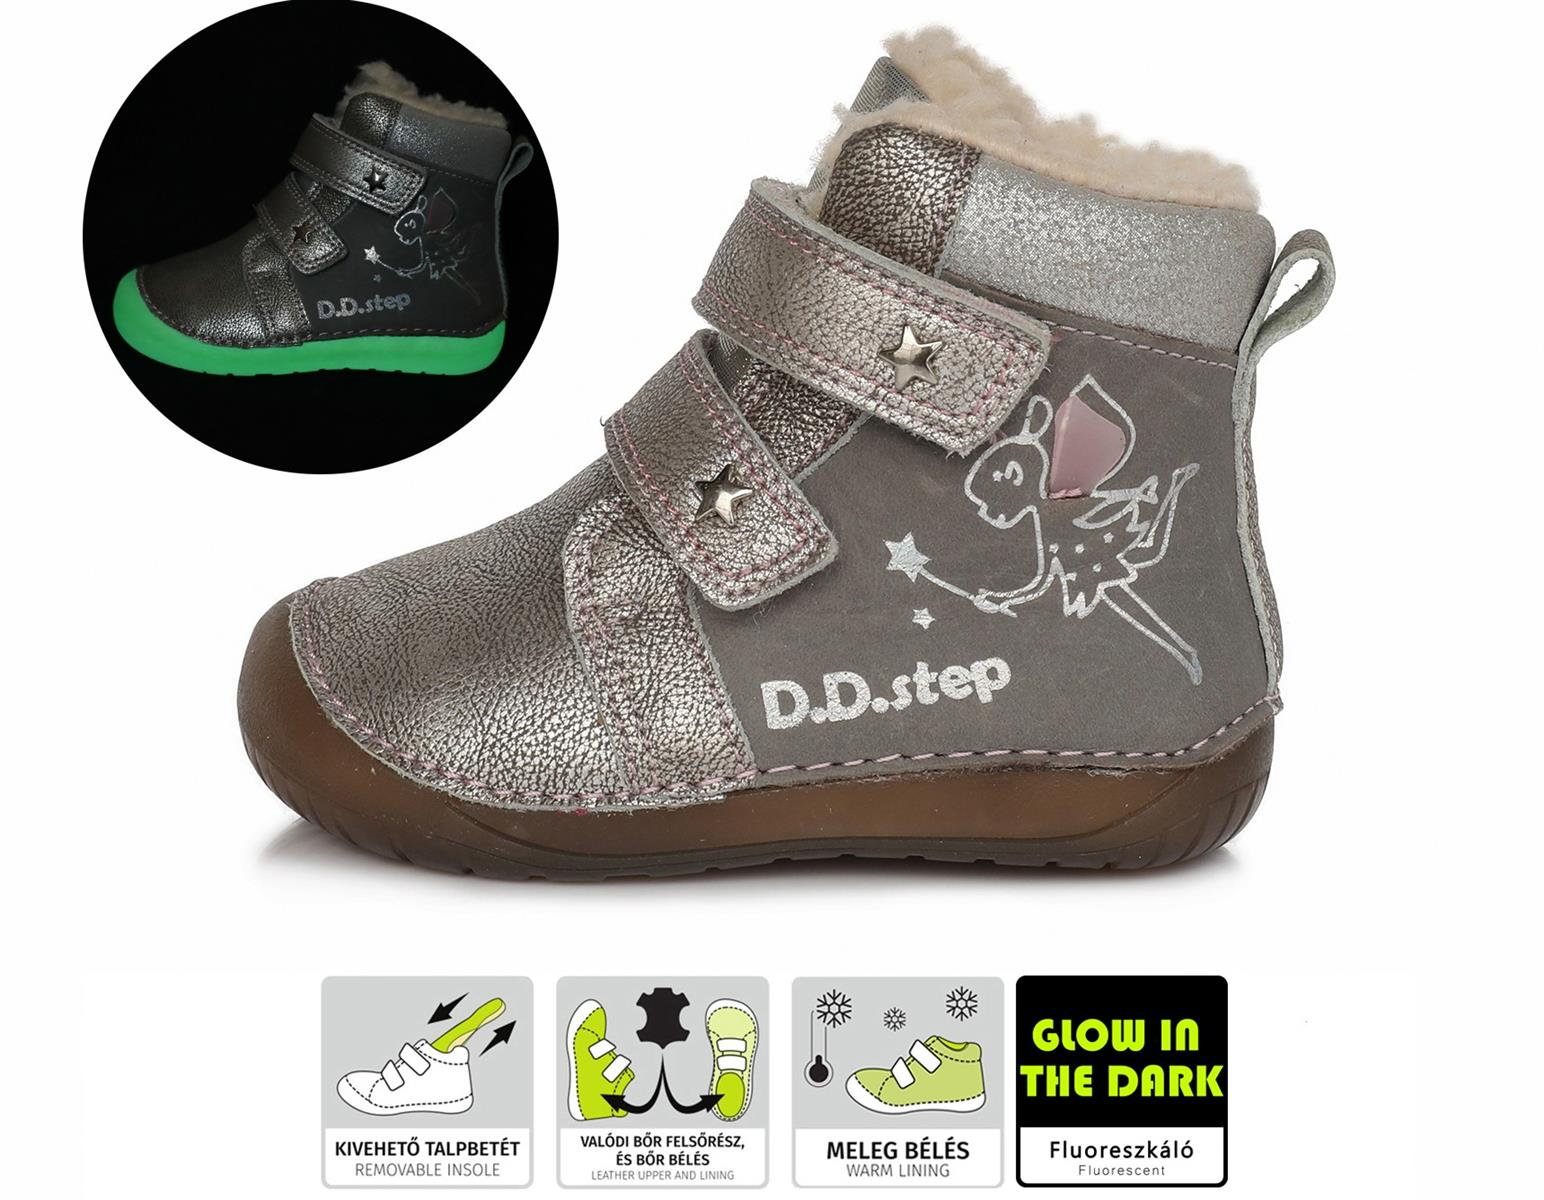 Zimné topánky DDstep 070 - strieborné s vílou